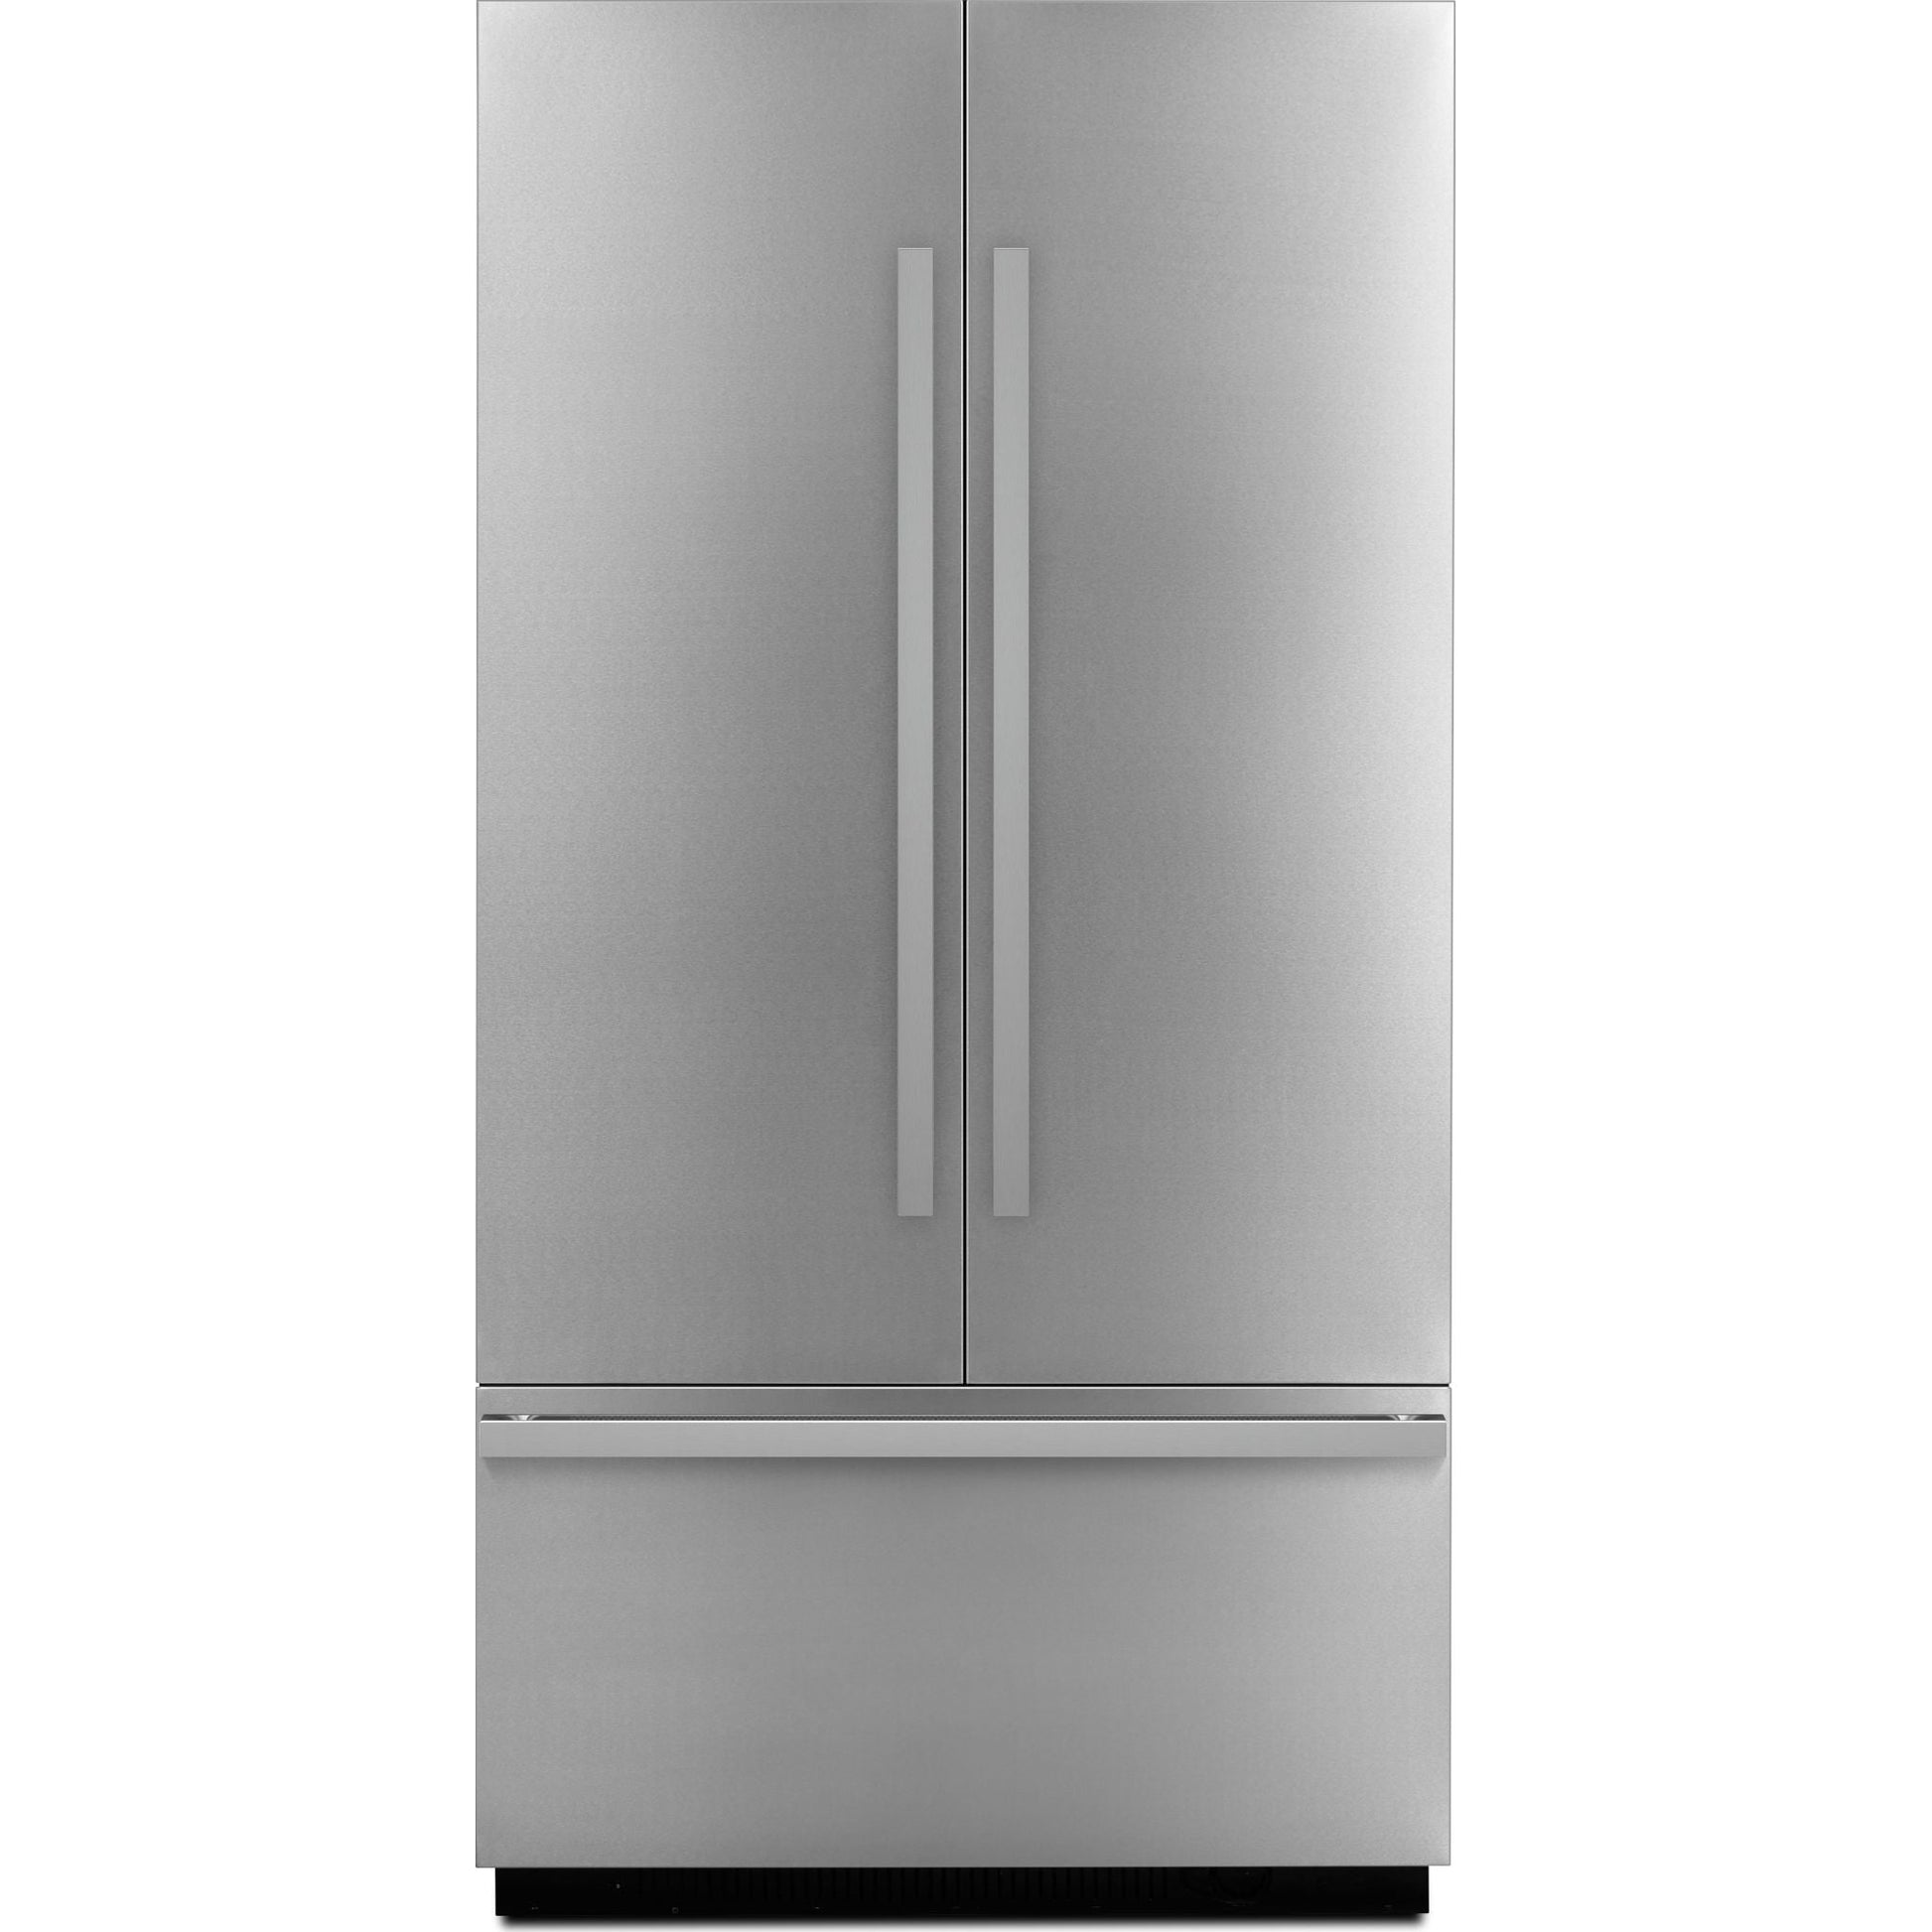 JennAir Refrigerator Built-In Panel Kit (JBFFS42NHM)